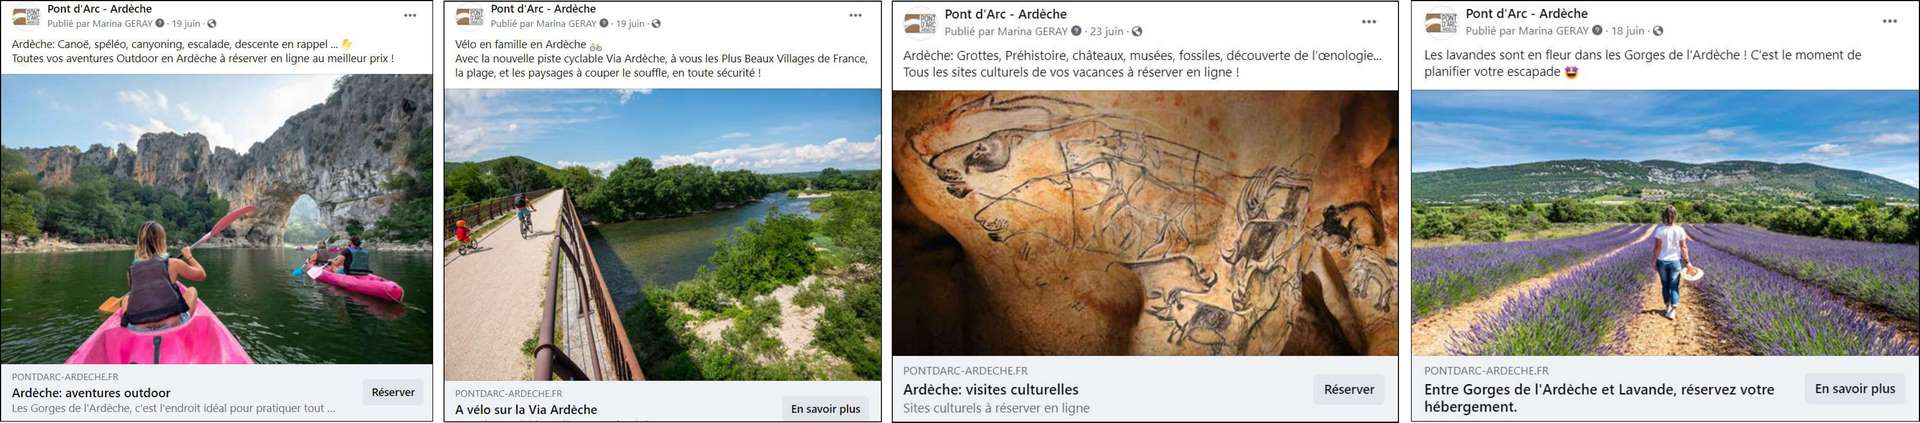 Campagnes segmentées Facebook Office de Tourisme Pont d'Arc - Ardèche